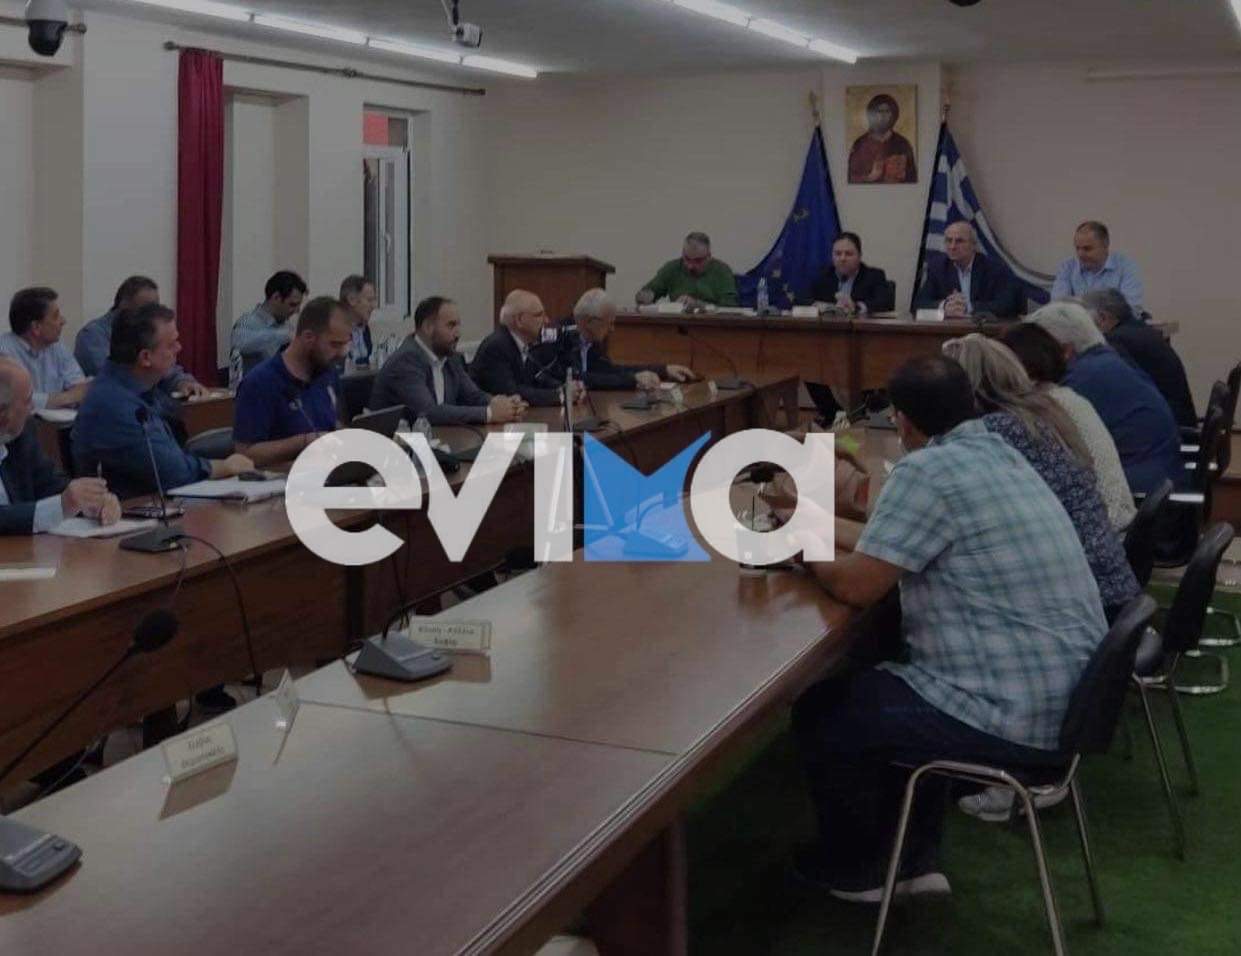 Κριεζά: Στο Δημοτικό Συμβούλιο του Δήμου Κύμης Αλιβερίου ο Μίλτος Χατζηγιαννάκης